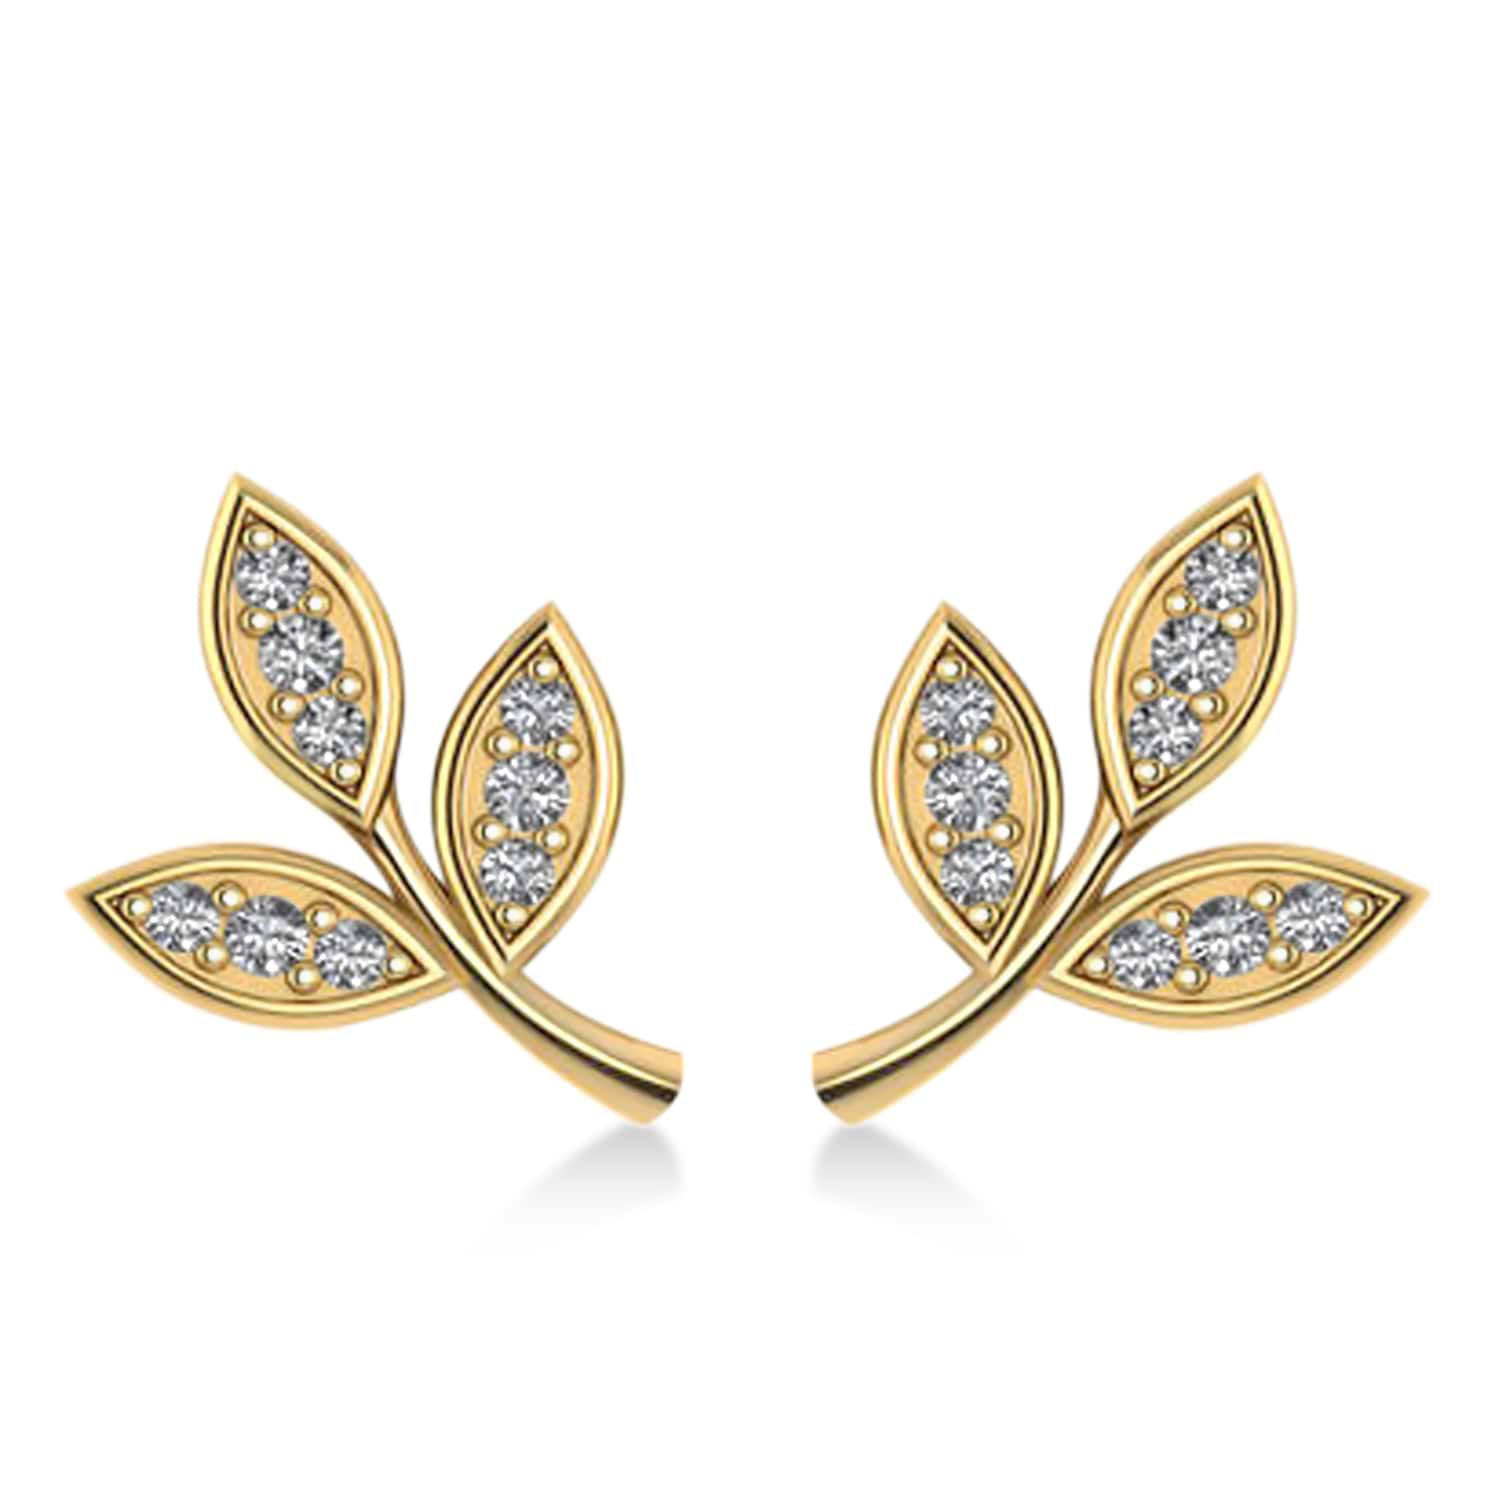 Diamond 3-Petal Leaf Earrings 14k Yellow Gold (0.21ct)